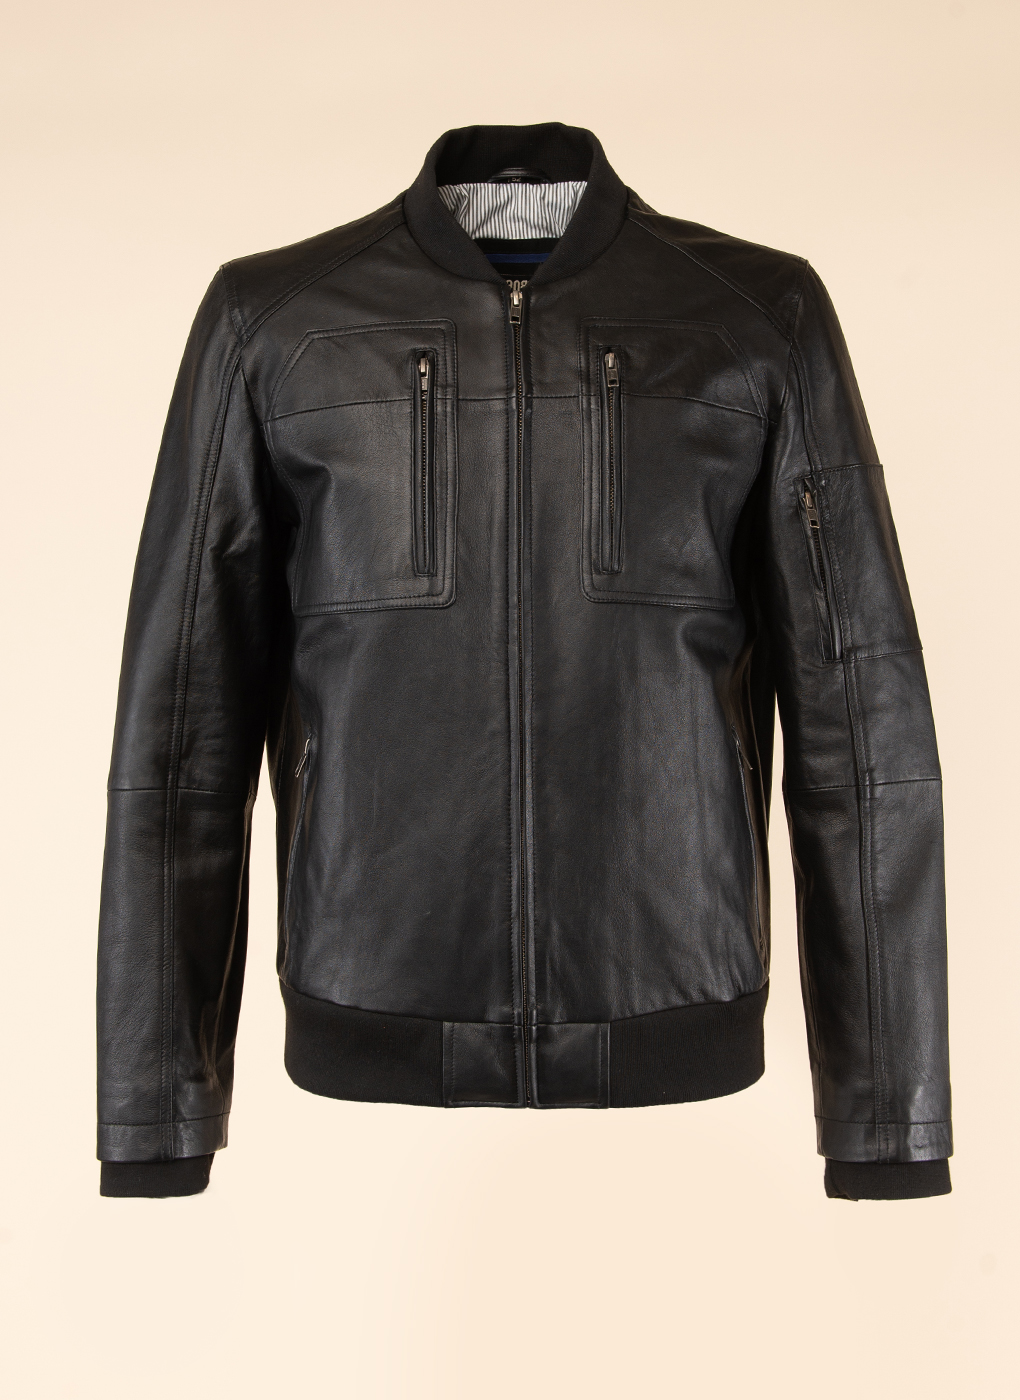 Кожаная куртка мужская Каляев 51745 черная 60 RU